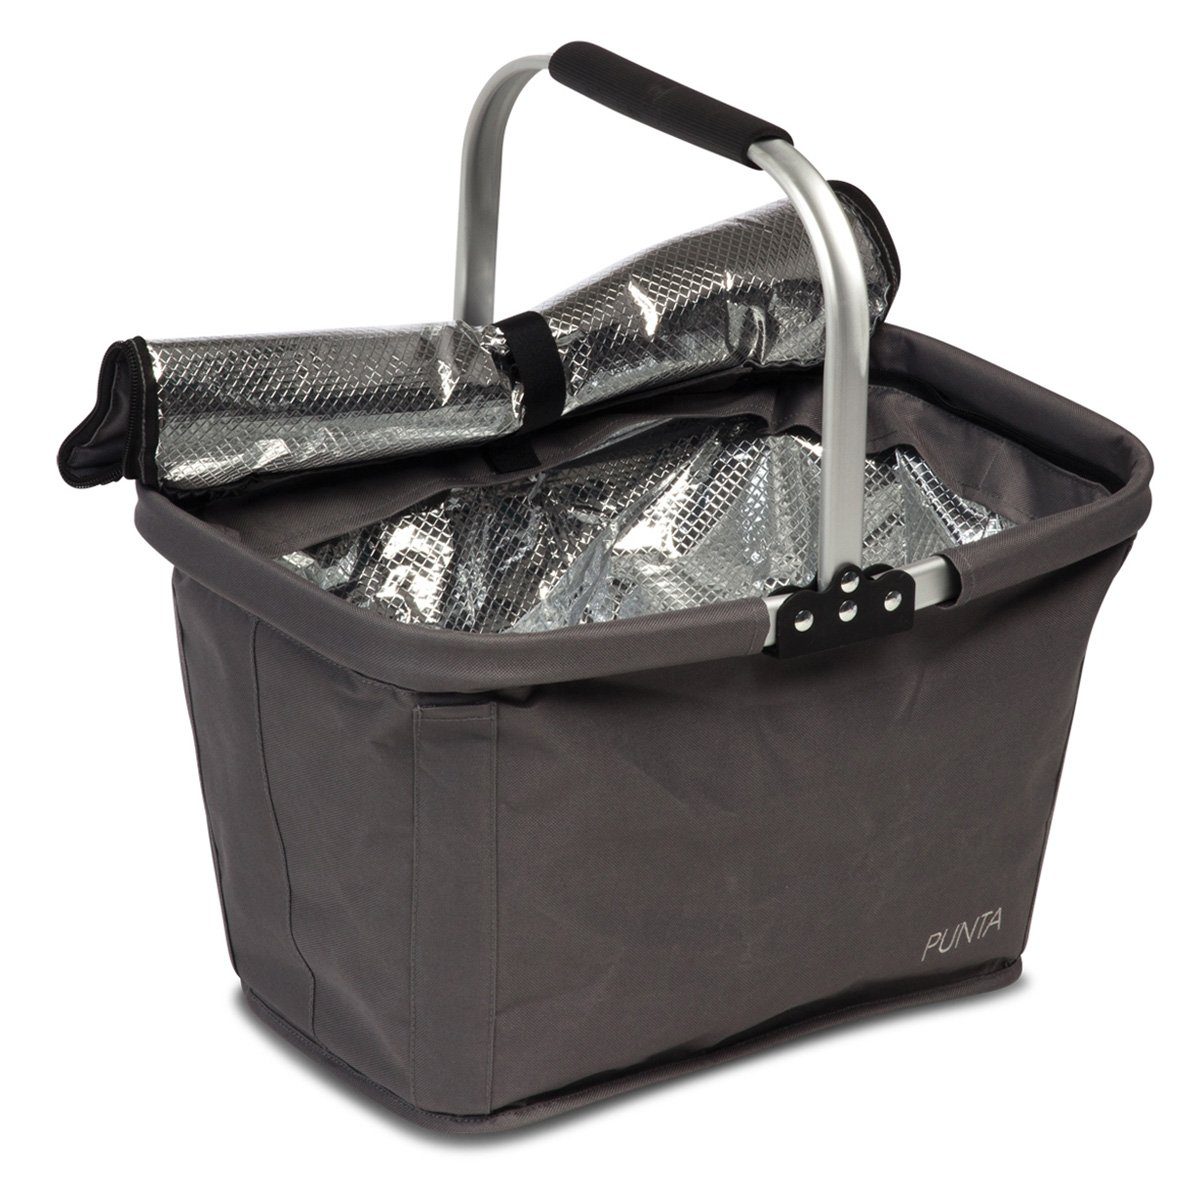  Reisenthel carrybag iso Einkaufskorb mit Kühlfunktion Iso  Frame Twist Silver